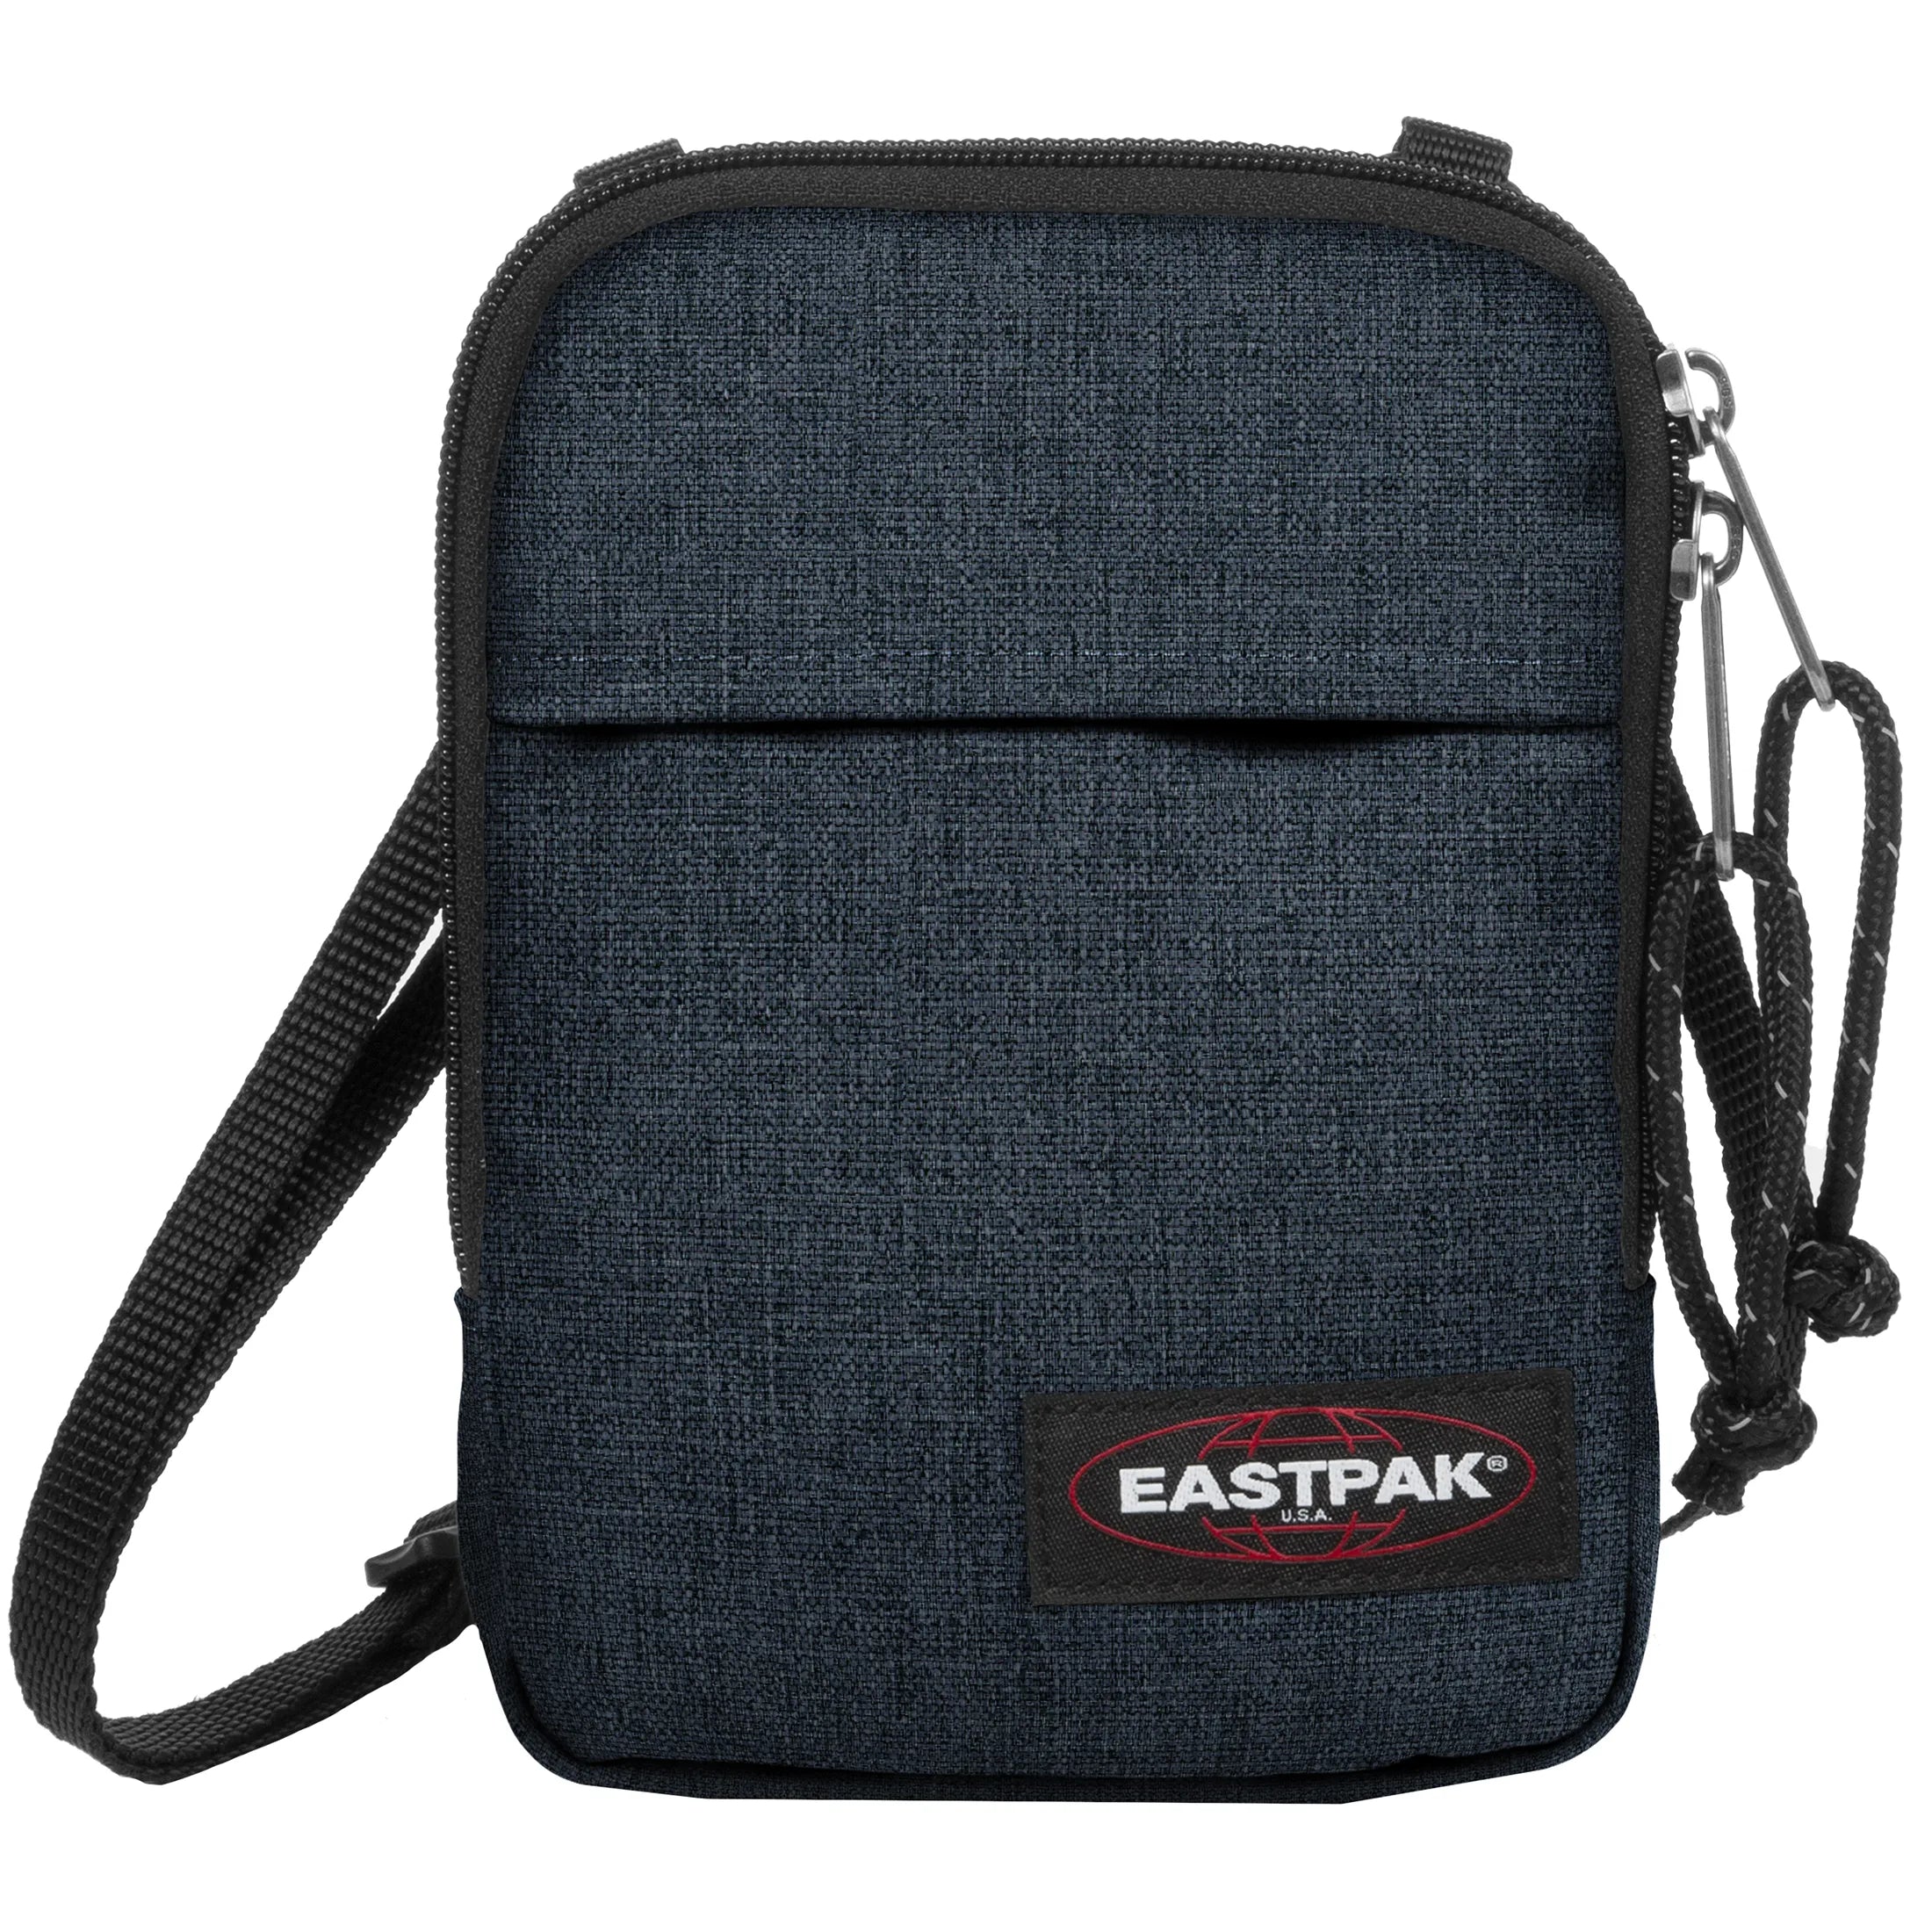 Eastpak Authentic Buddy youth bag 18 cm - triple denim